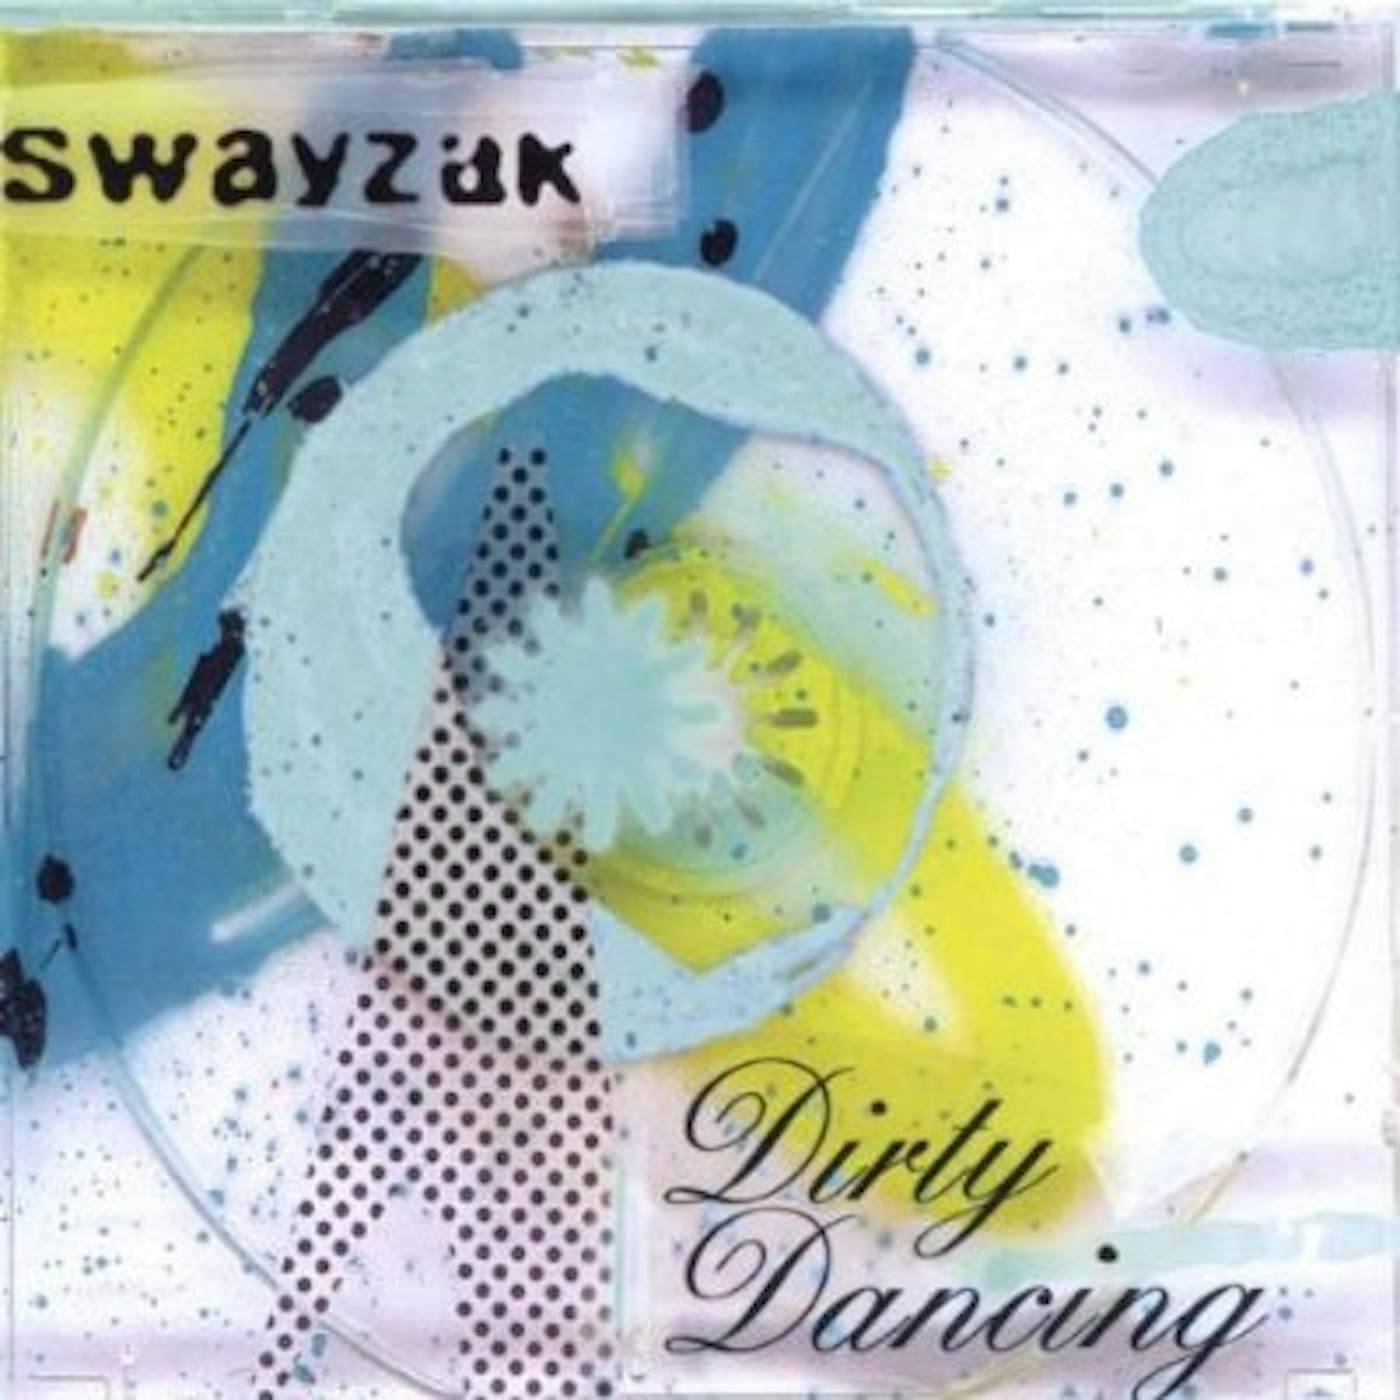 Swayzak DIRTY DANCING CD